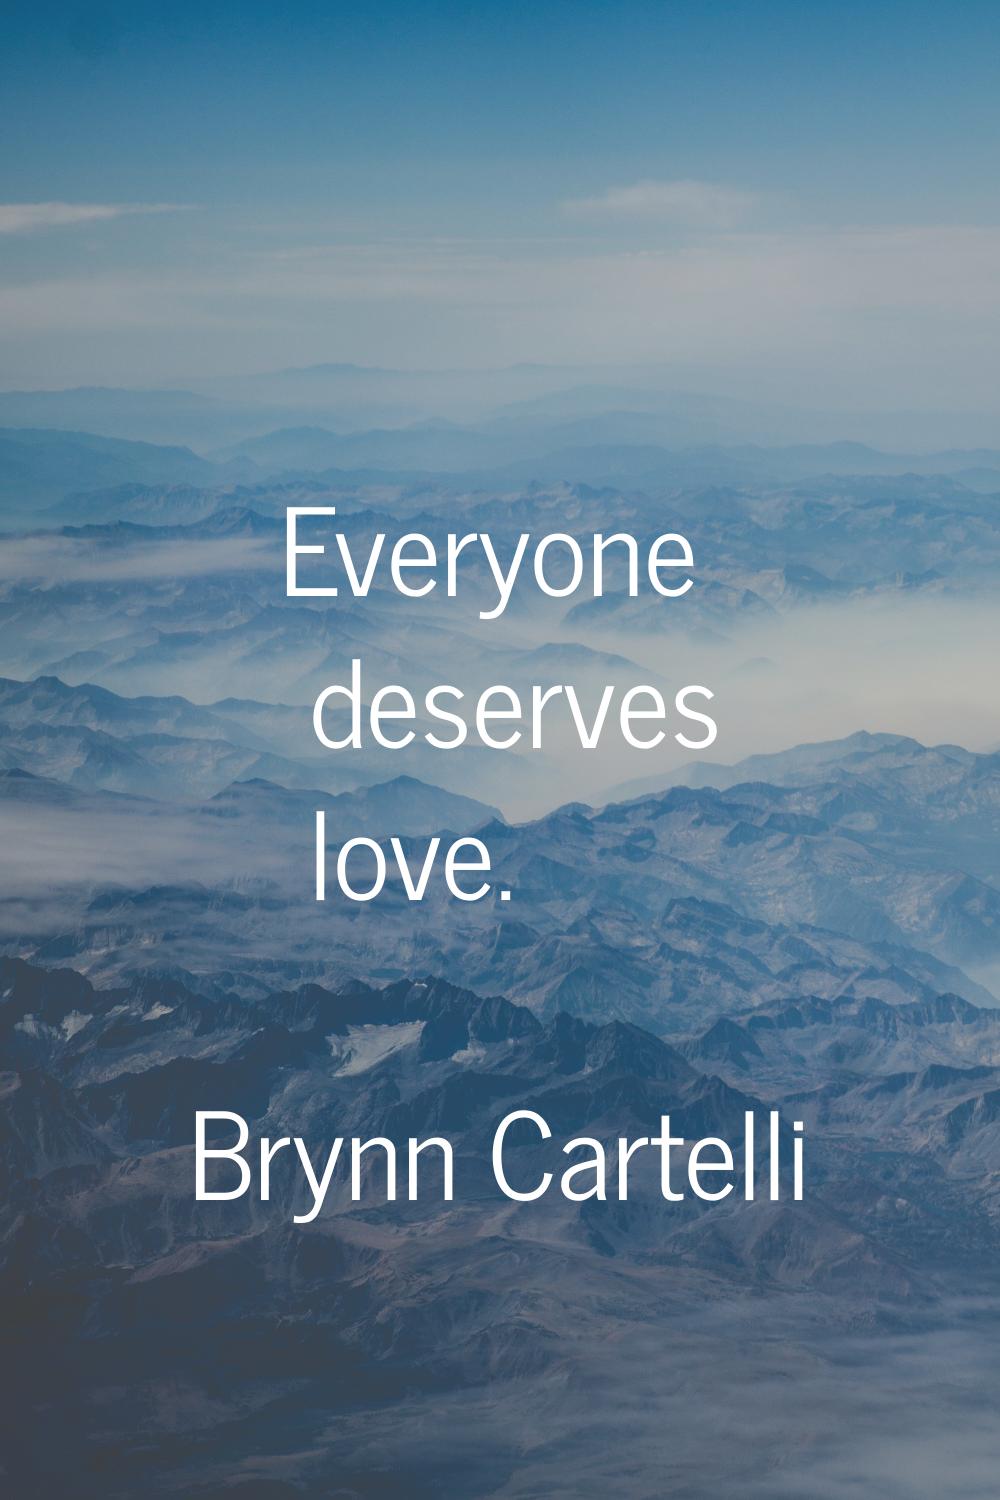 Everyone deserves love.